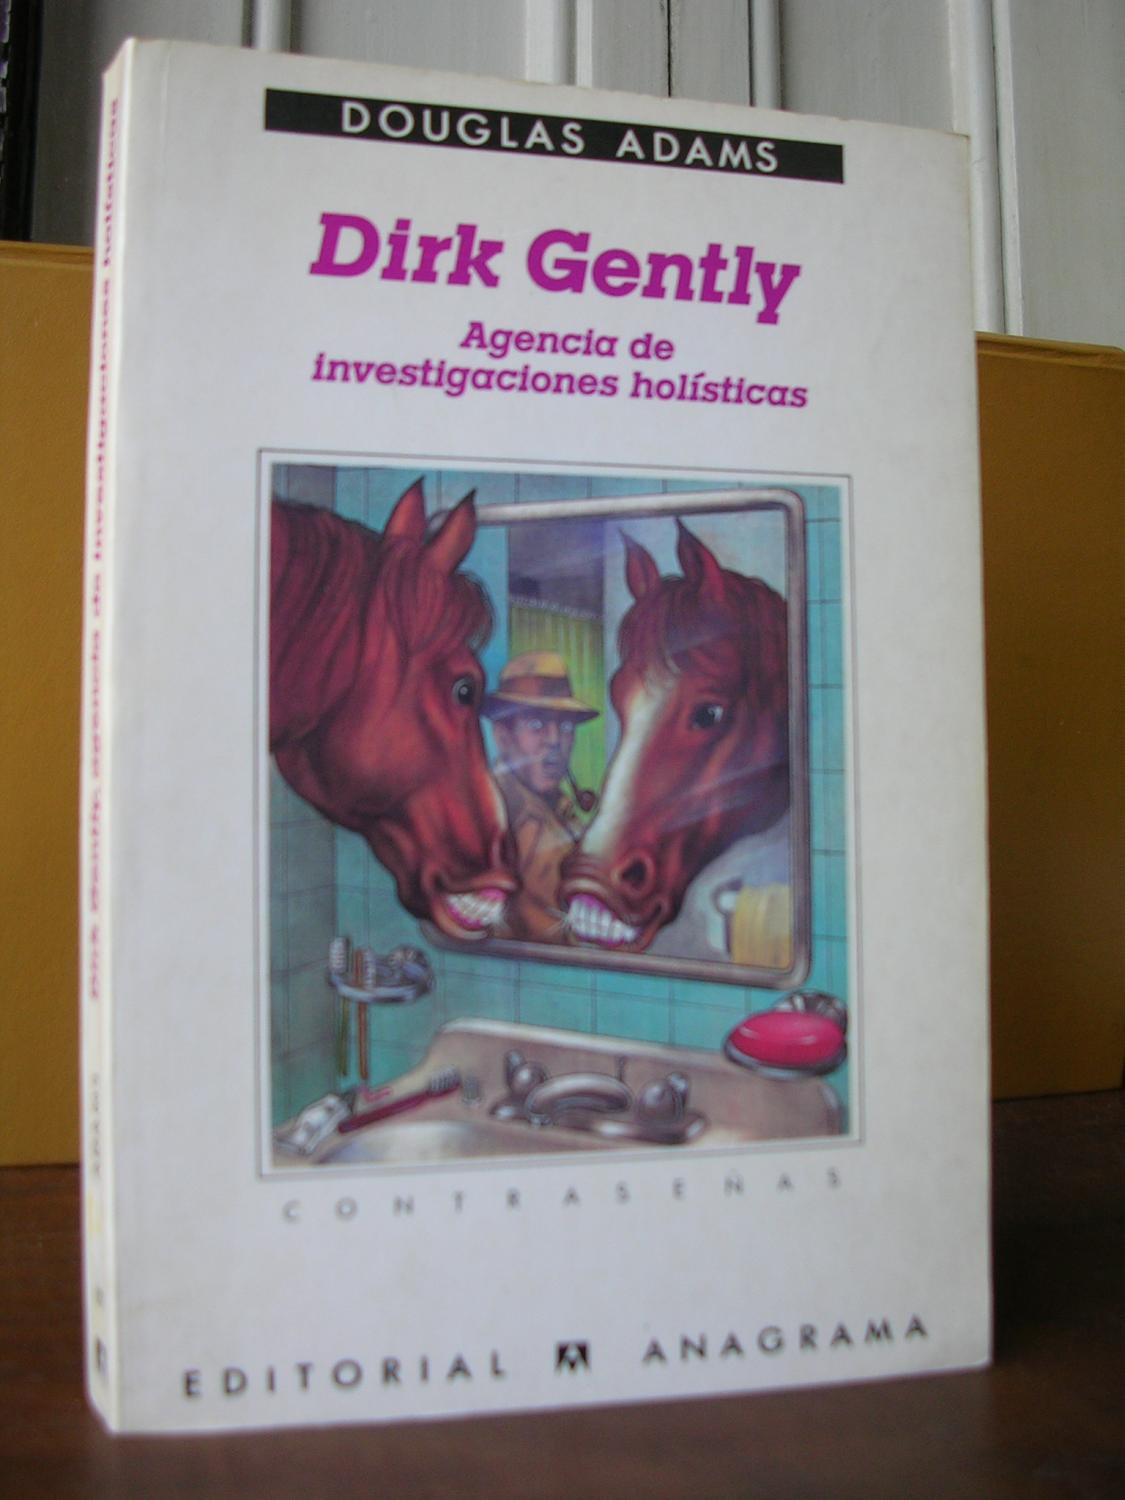 Contraseñas 127 agencia de investigaciones holísticas Dirk Gently